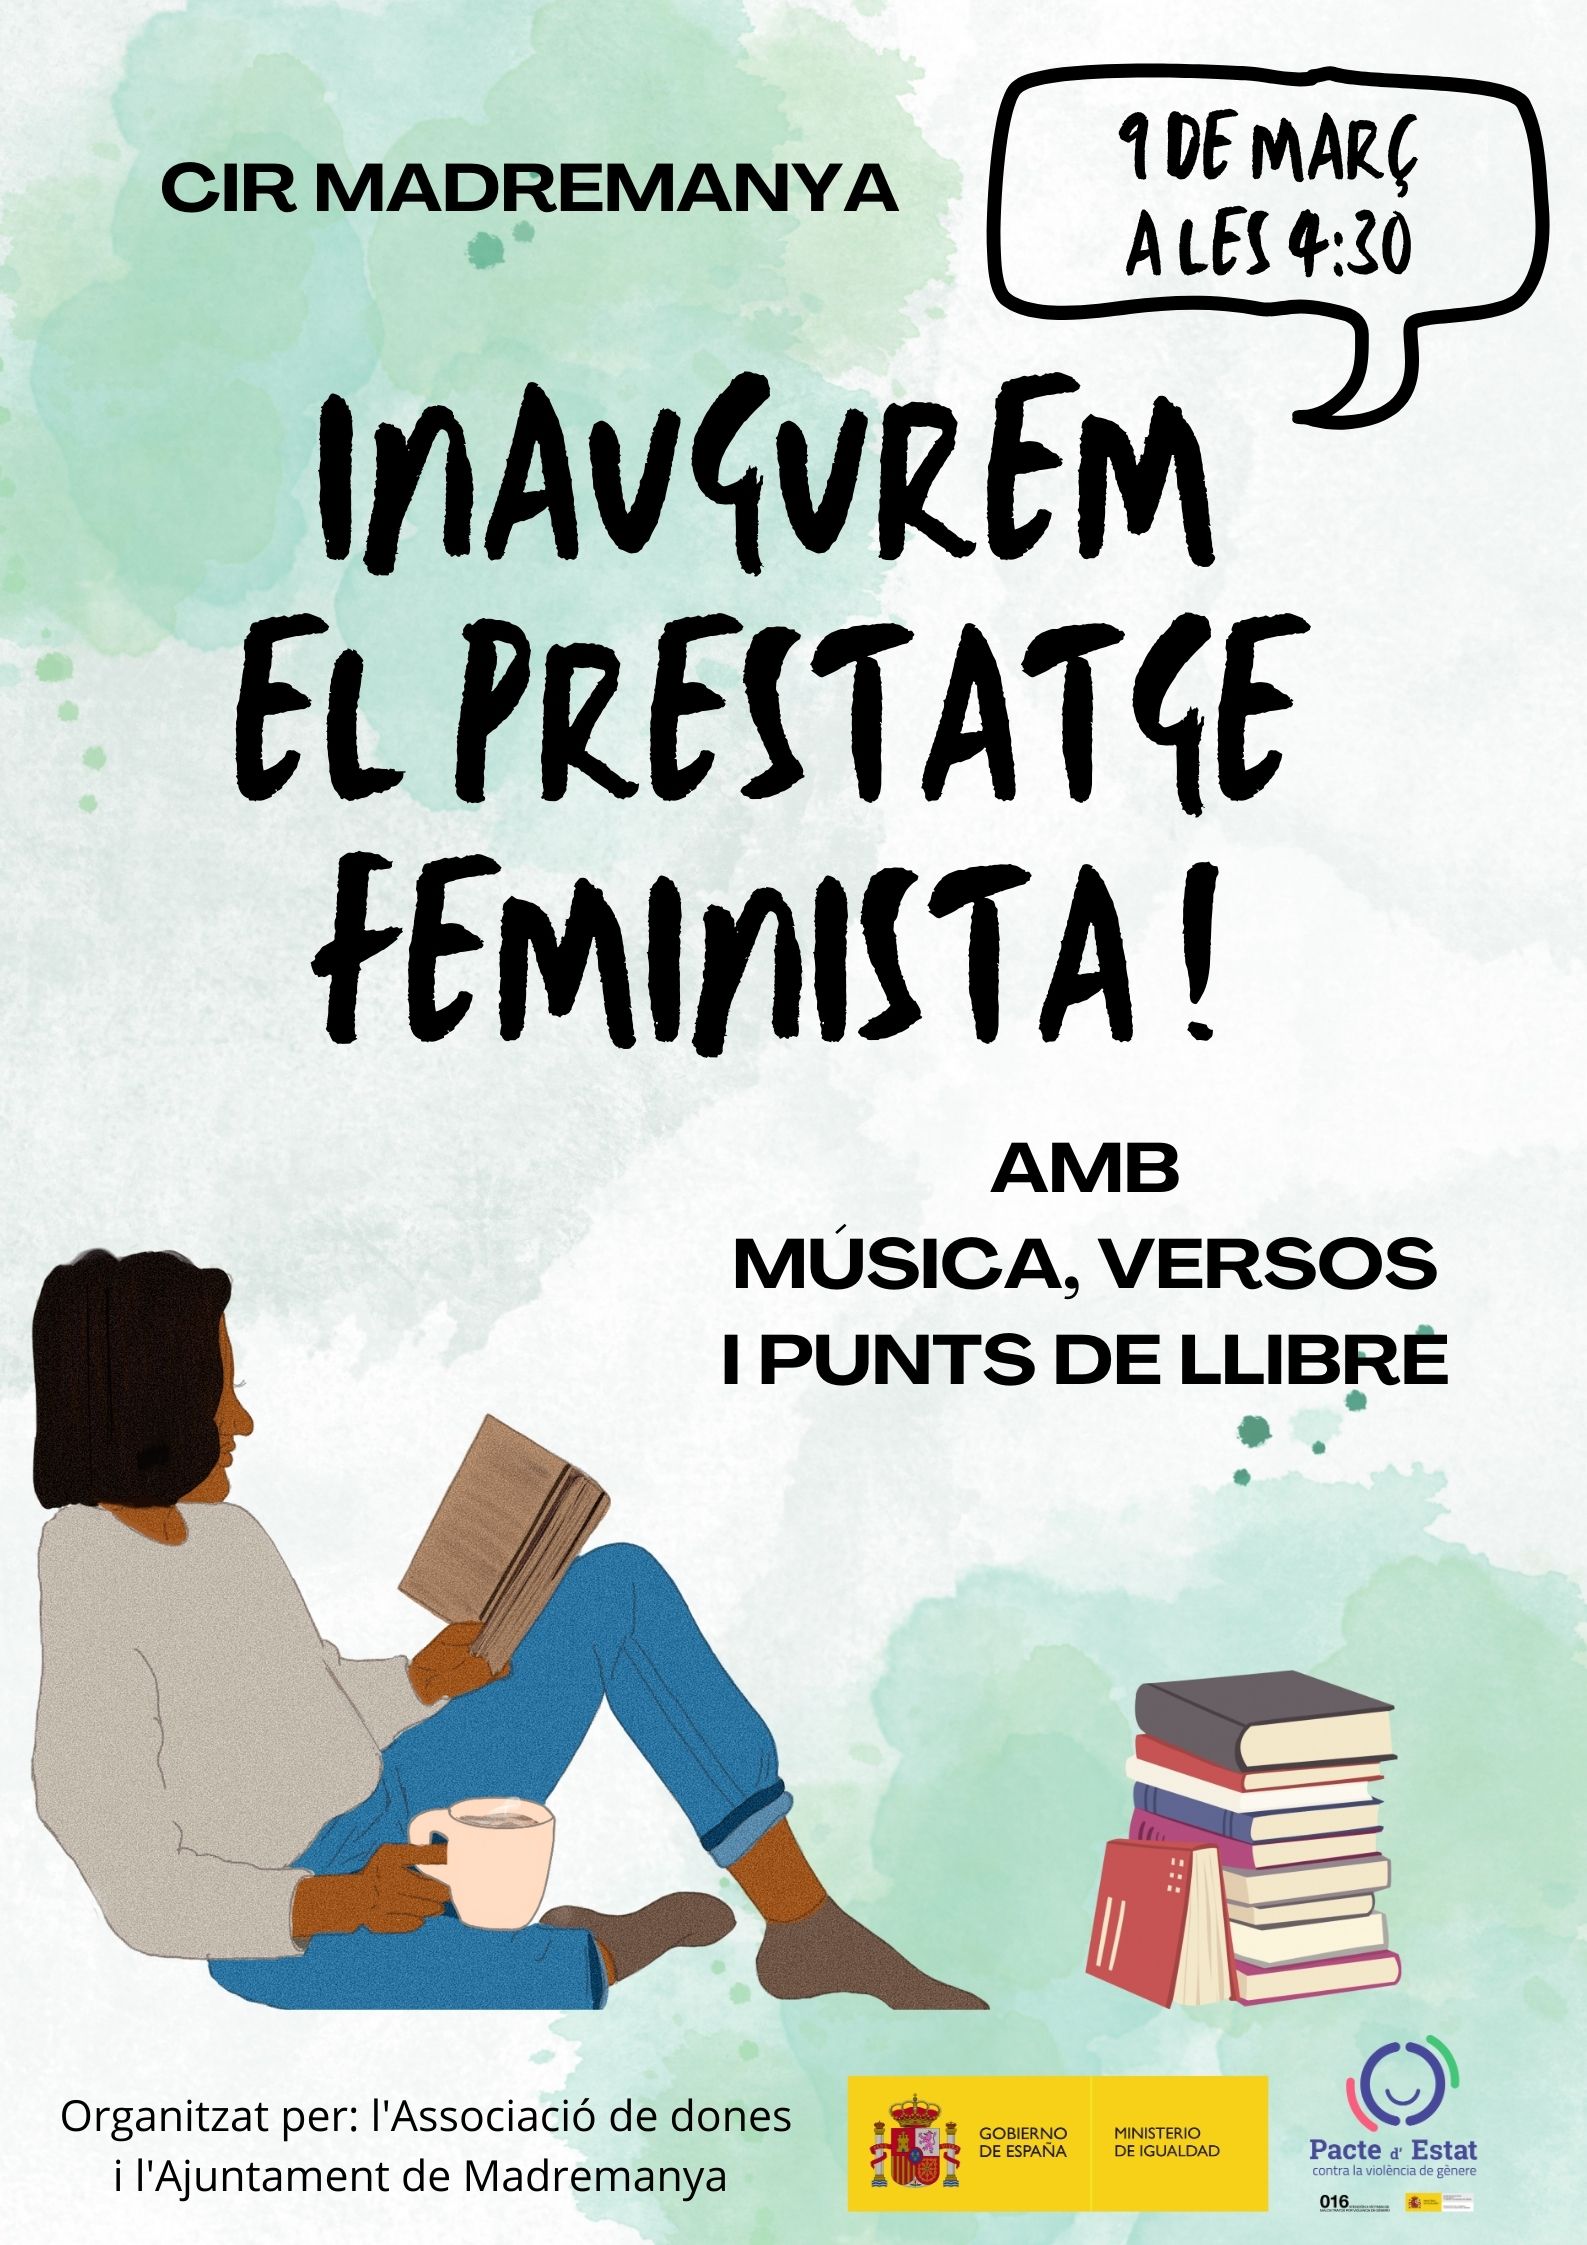 INAUGUREM EL PRESTATGE FEMINISTA!